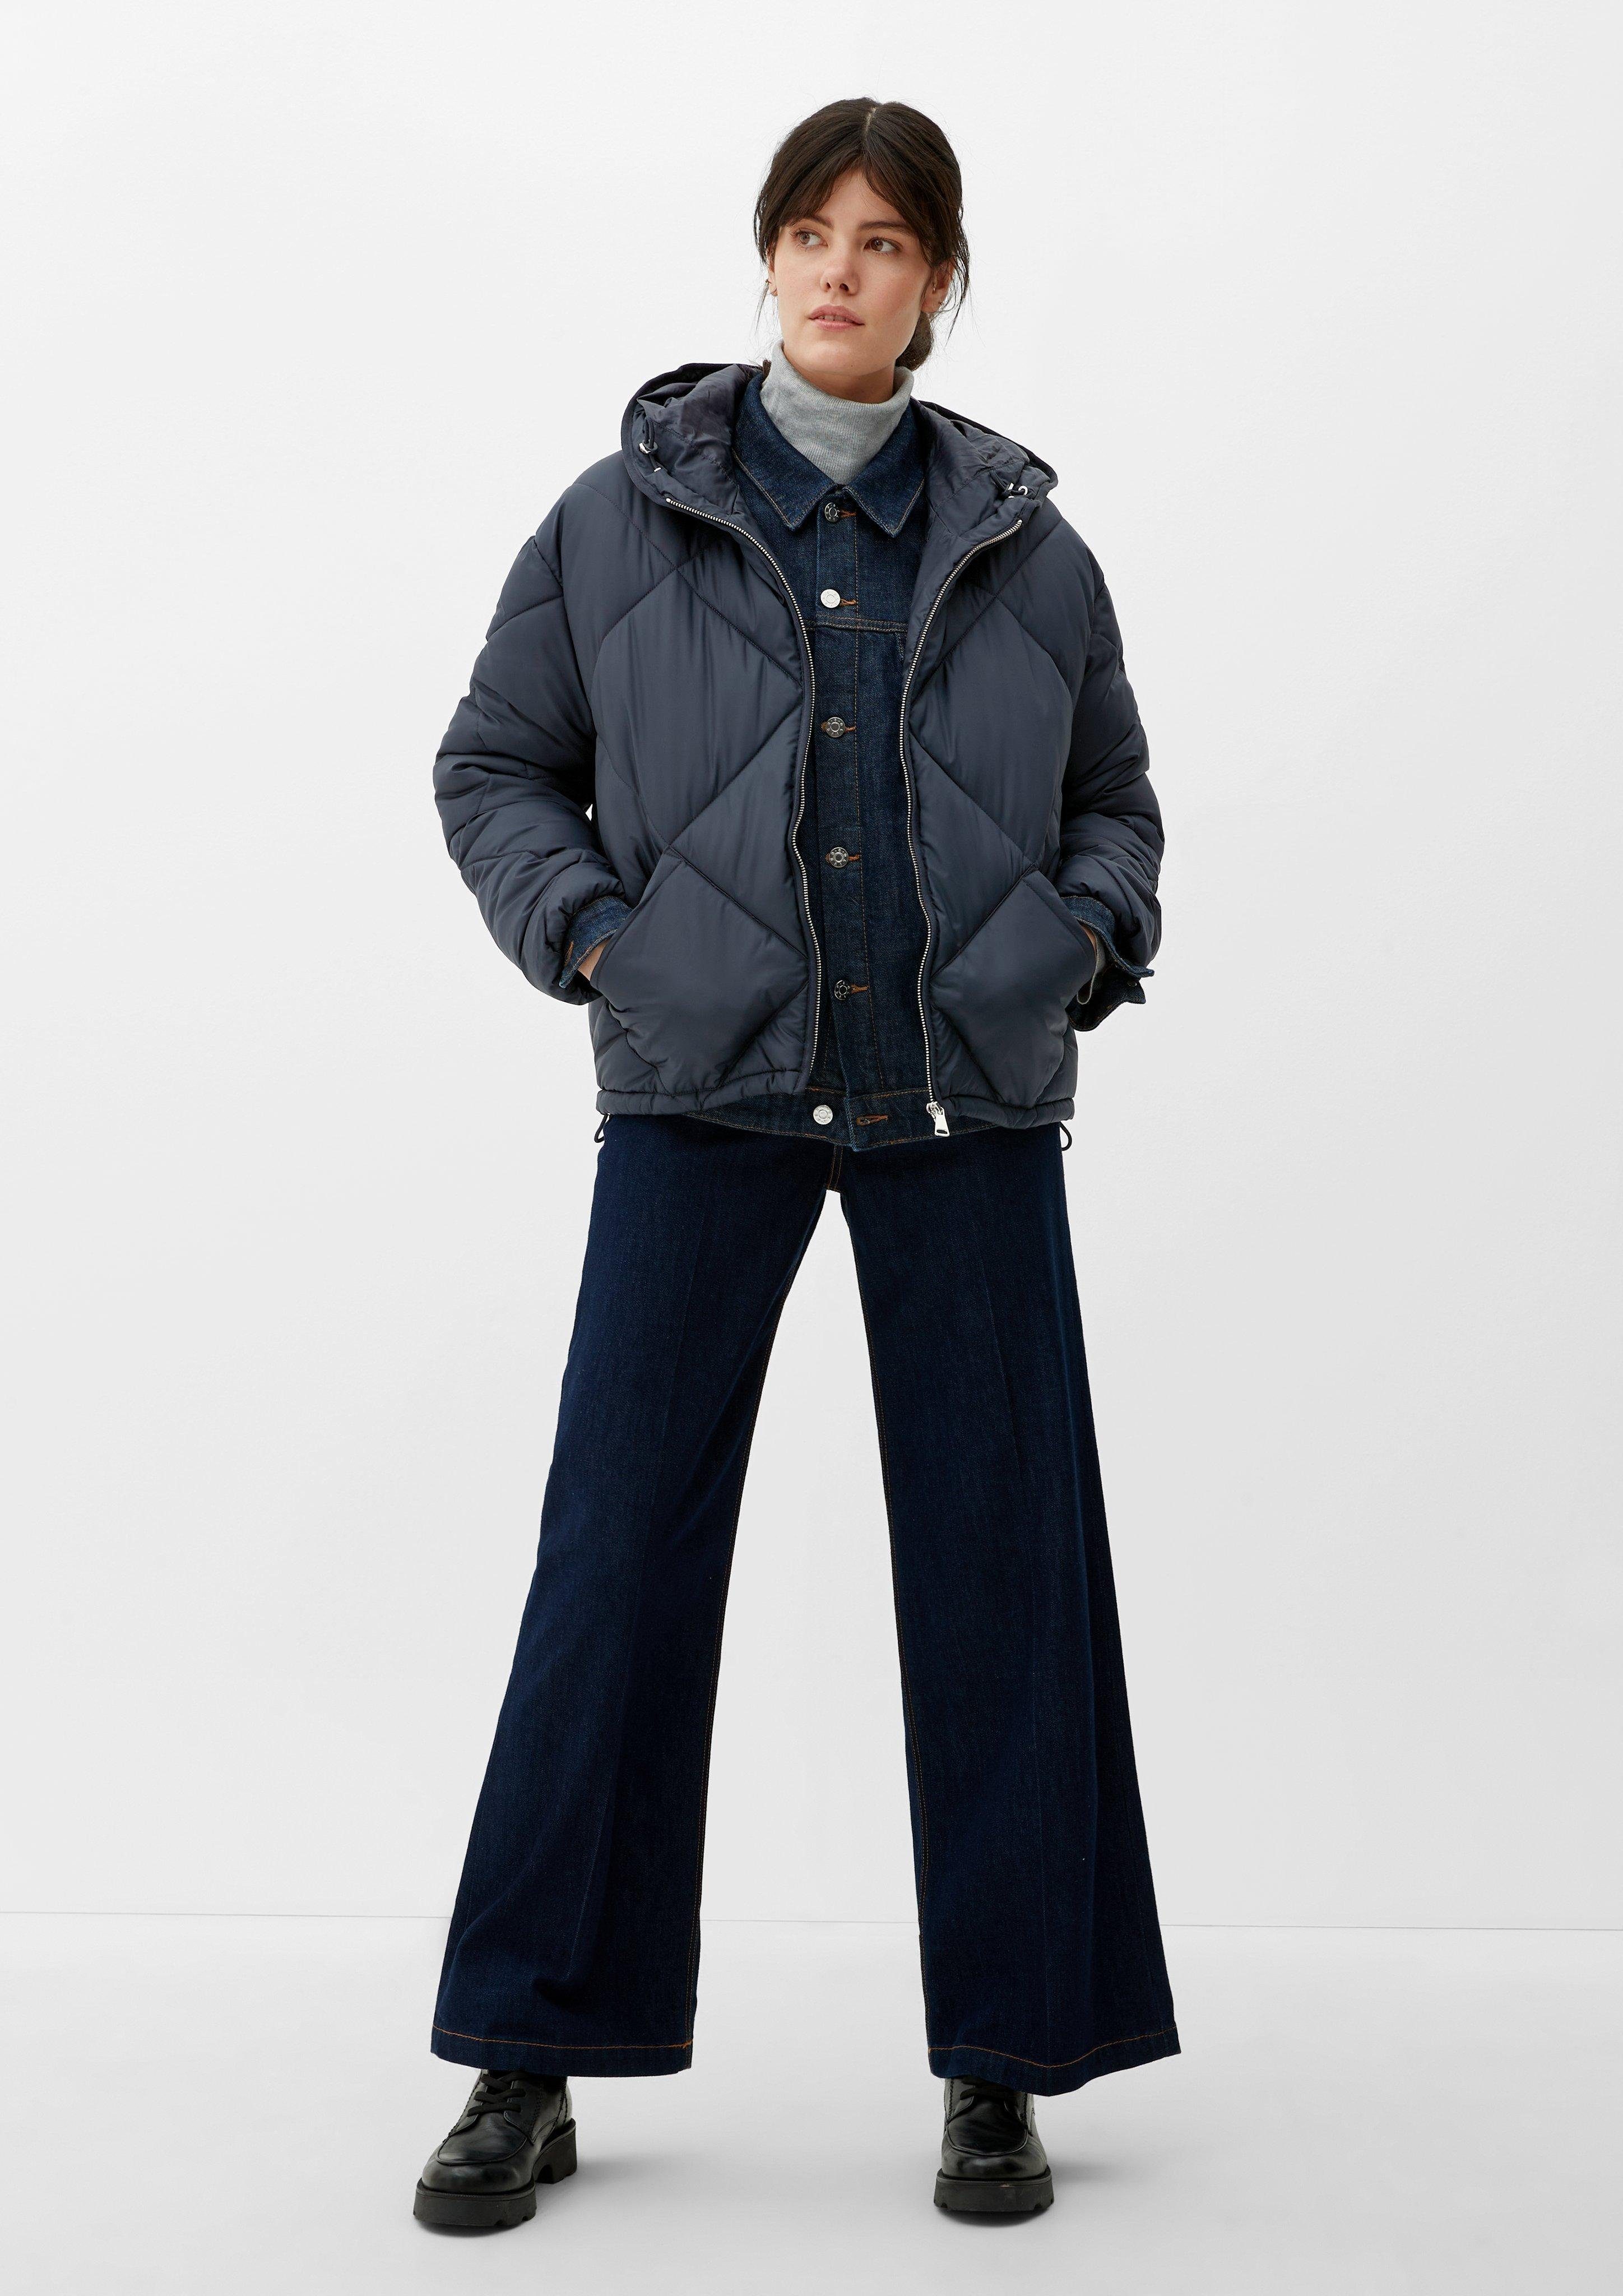 s.Oliver Outdoorjacke Jacke mit dunkelblau Steppung modischer